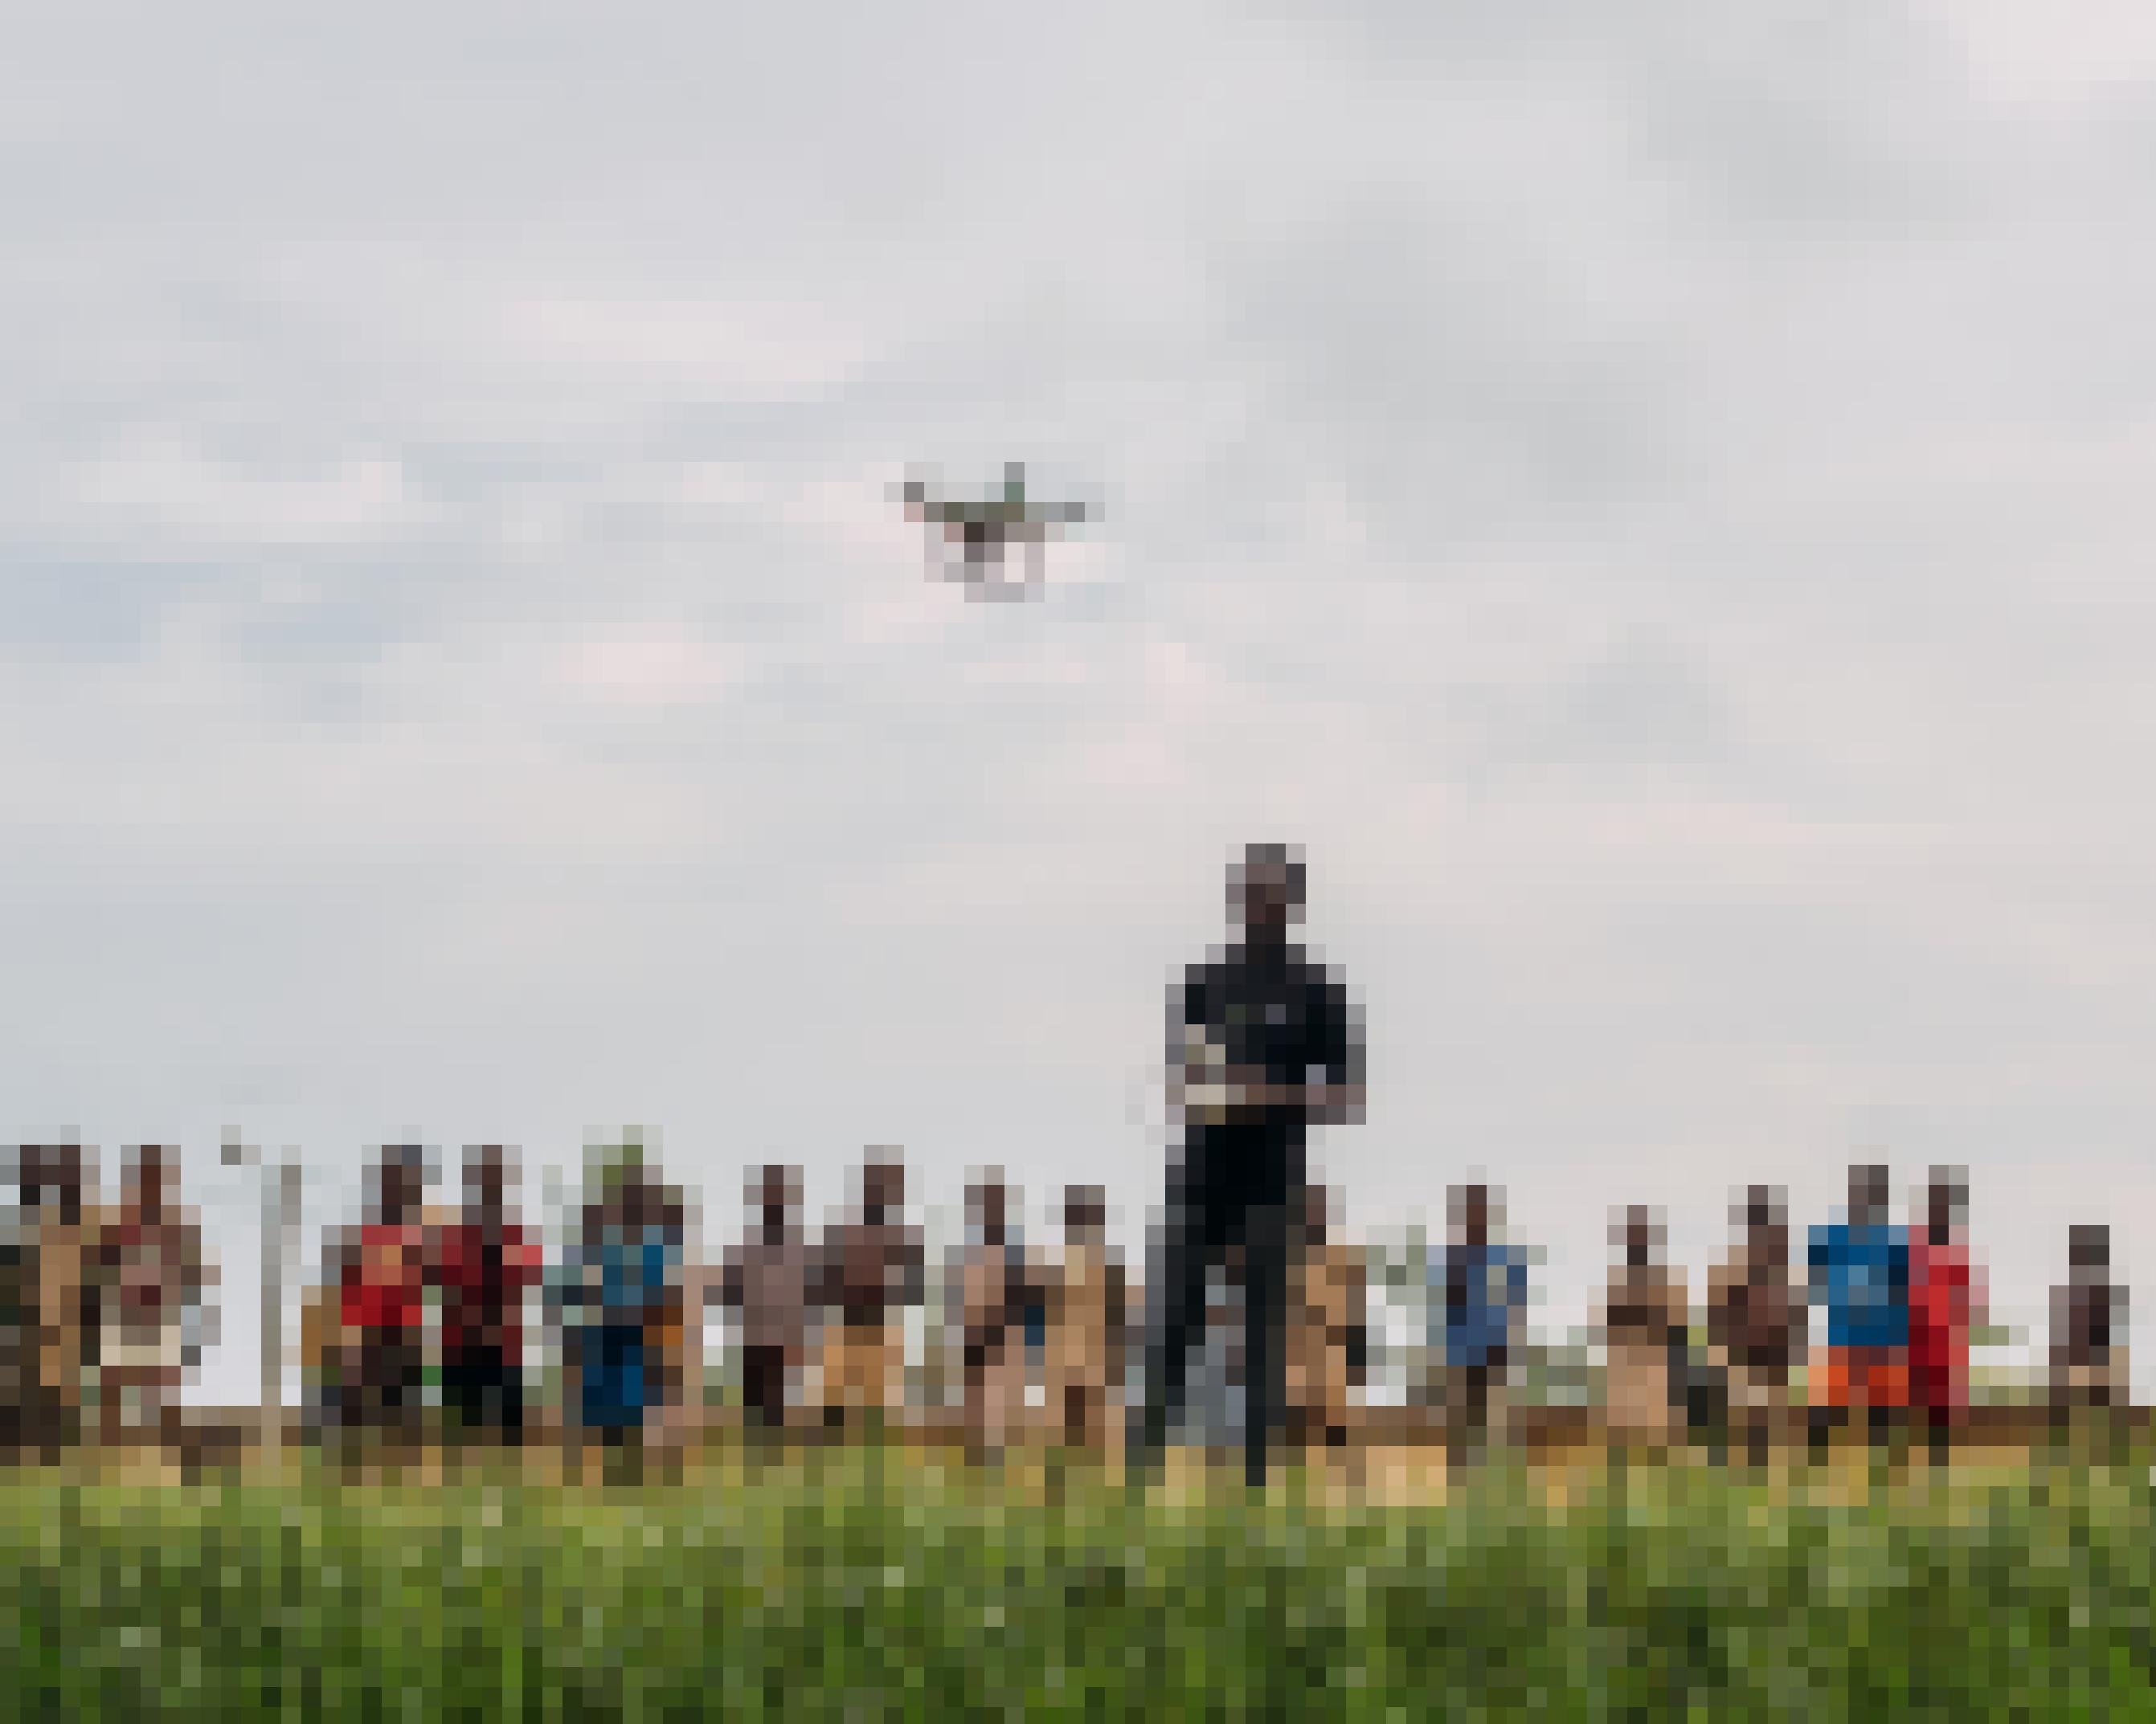 Ein Mann steuert per Fernbedienung eine Drohne. Im Hintergrund stehen einige Kinder, die die Drohne beobachten.